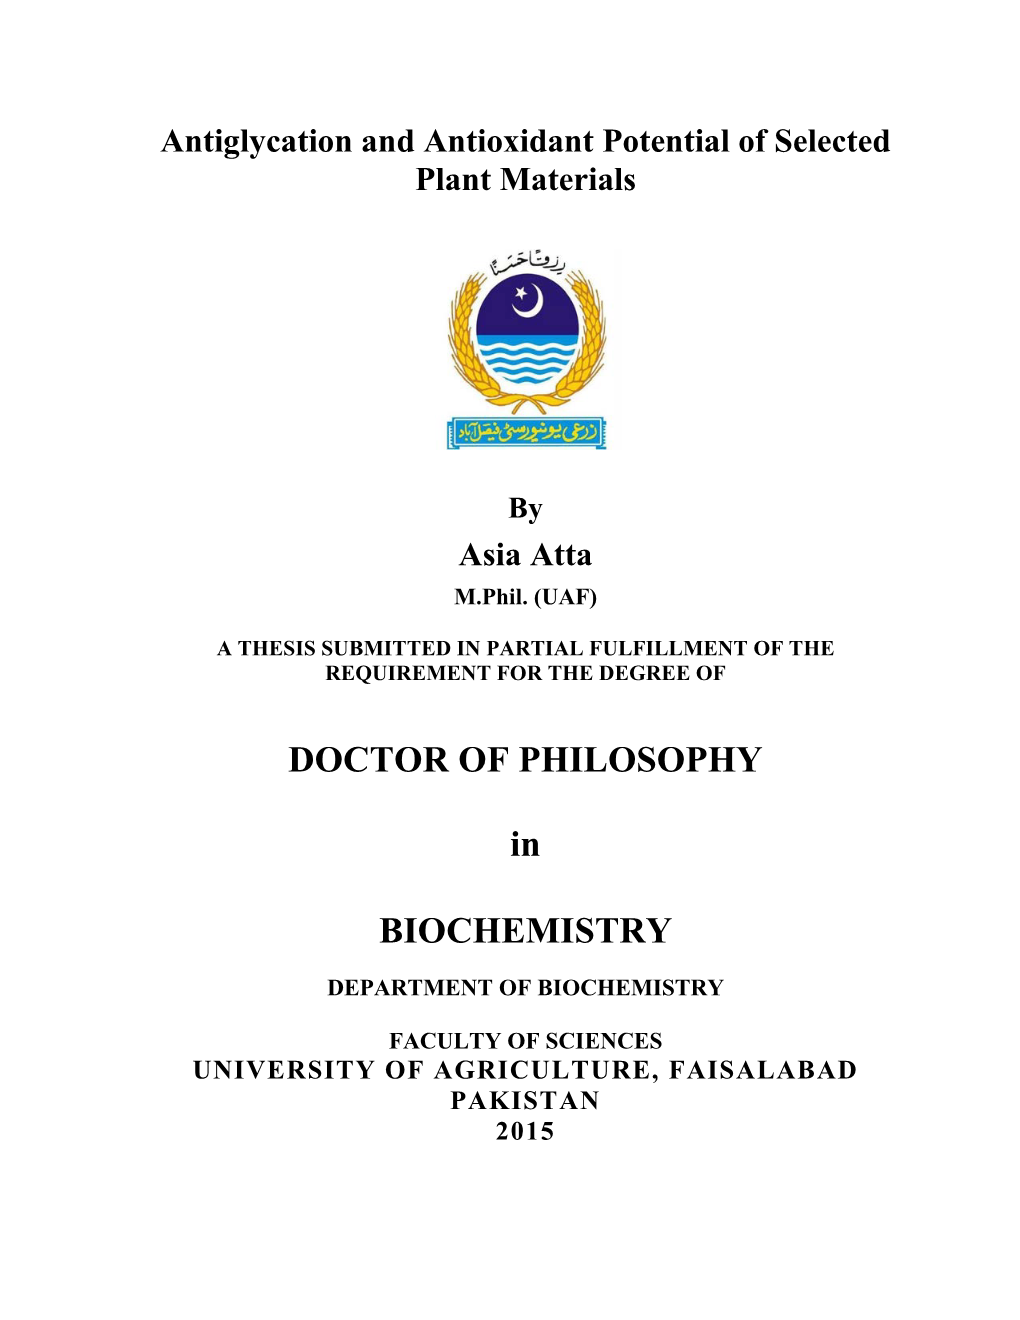 DOCTOR of PHILOSOPHY in BIOCHEMISTRY